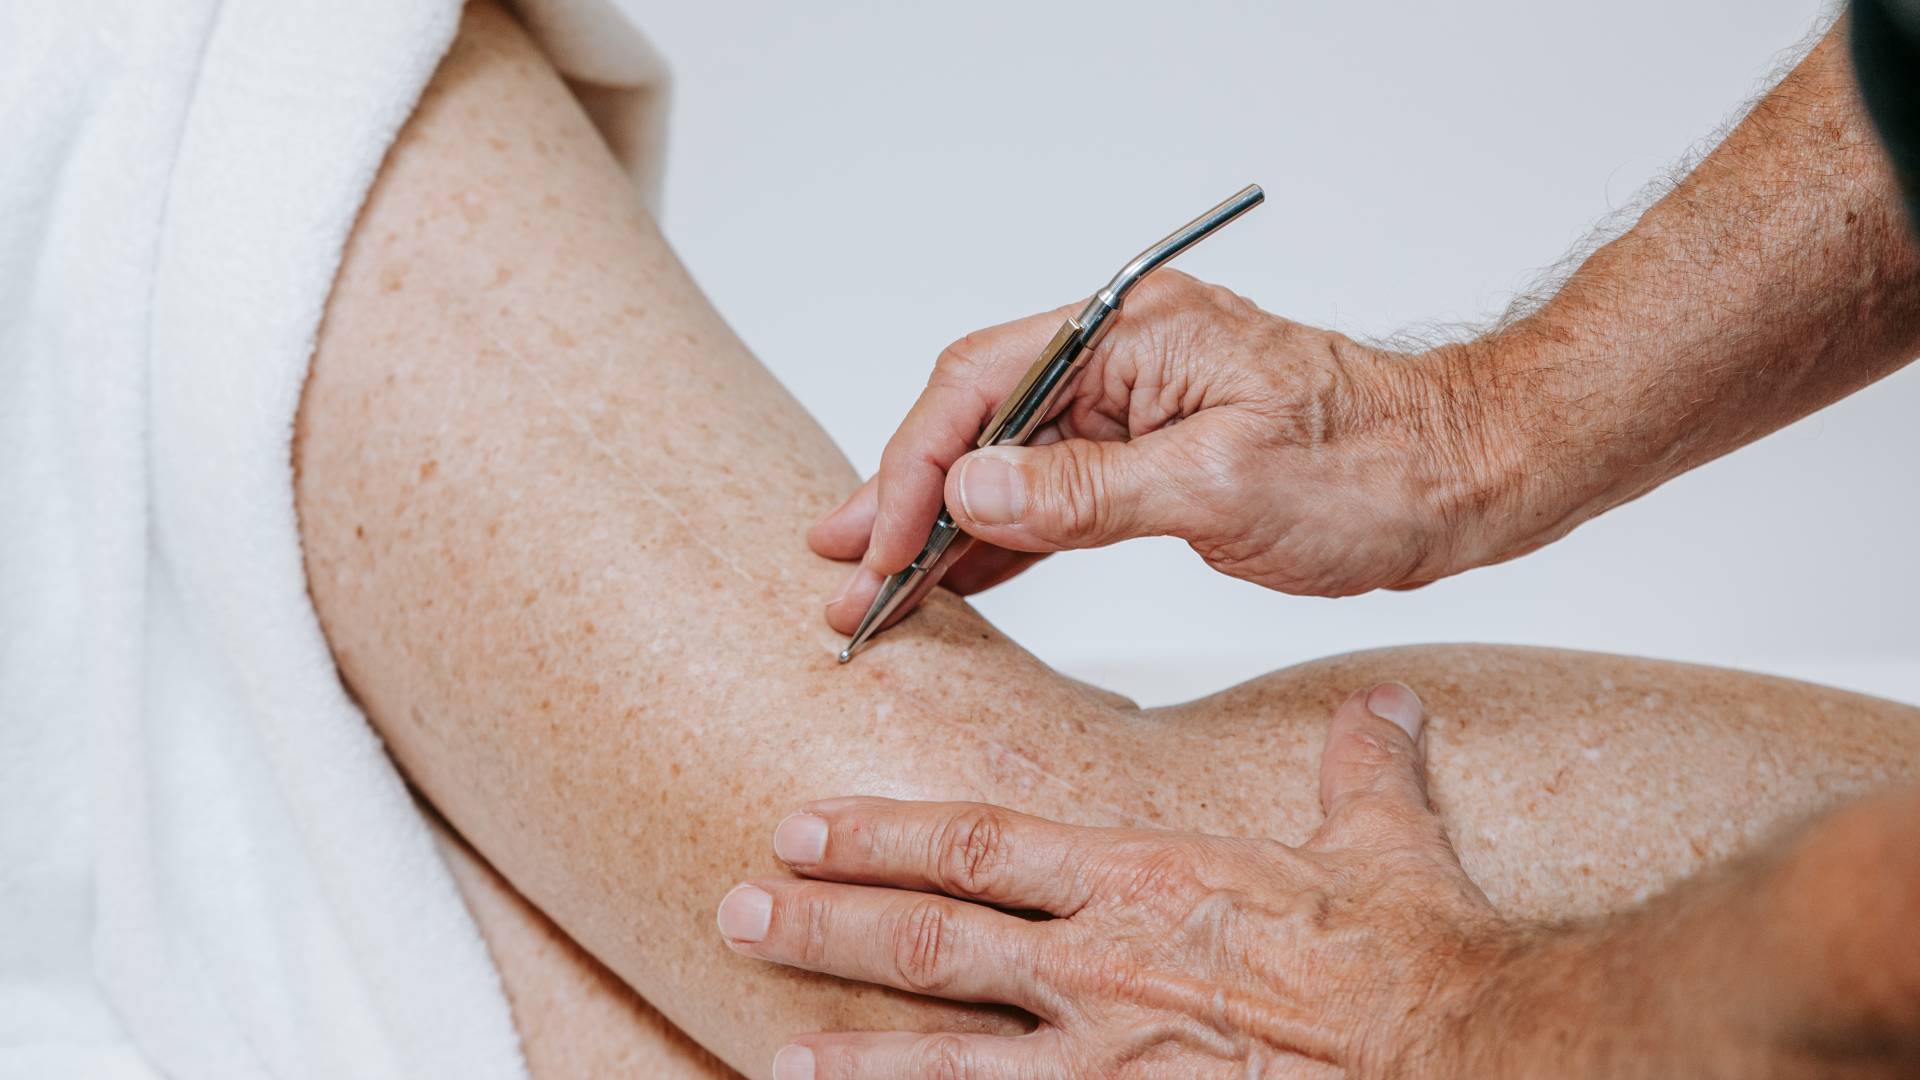 Eine Person erhält eine Behandlung der Haut am Bein.